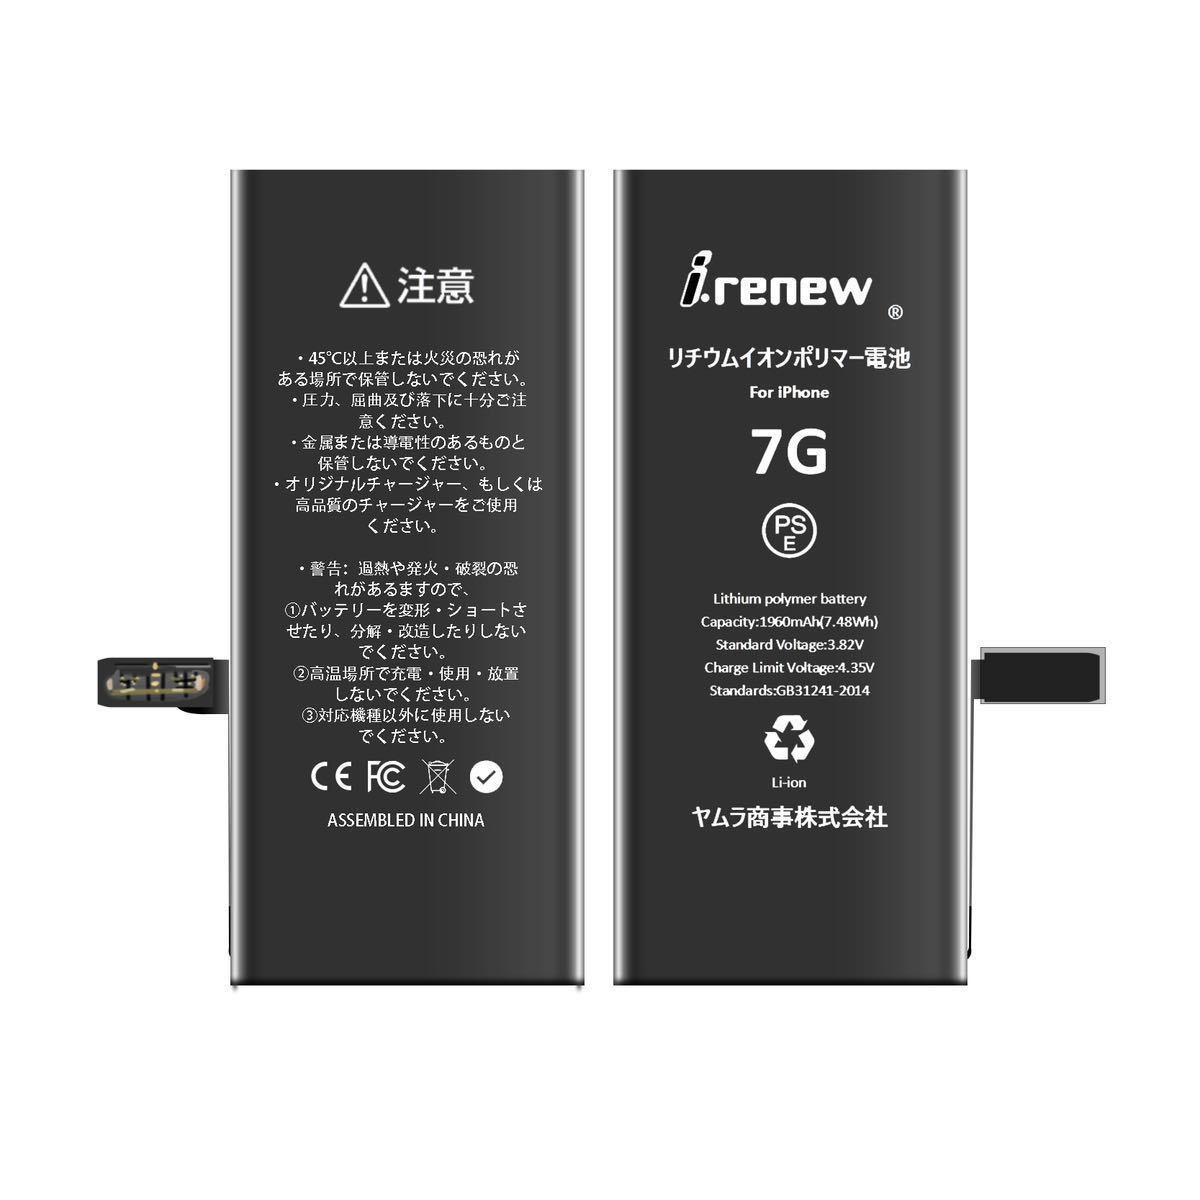 【新品】iPhone7 バッテリー 交換用 PSE認証済 工具・保証付